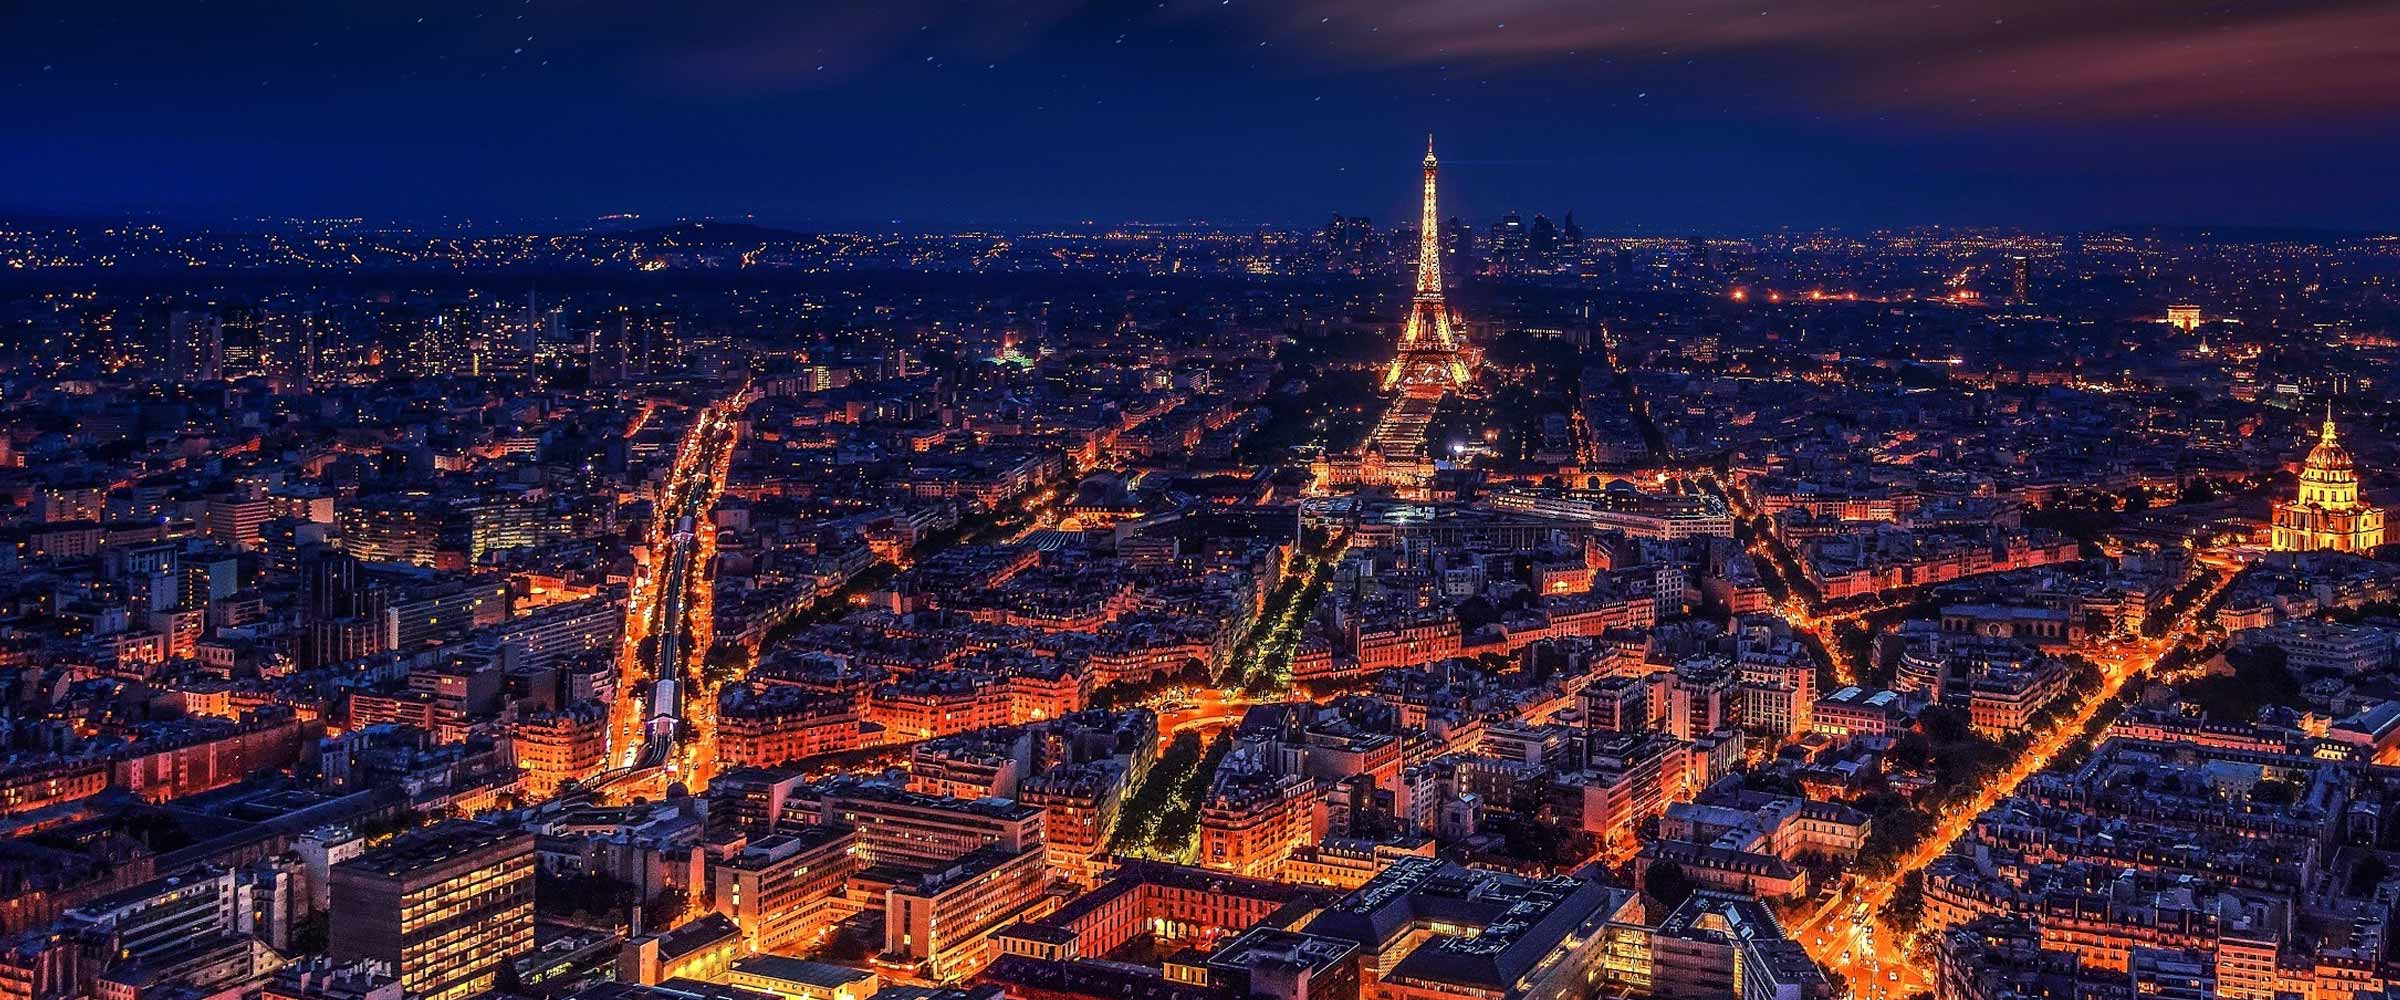 paris city of lights